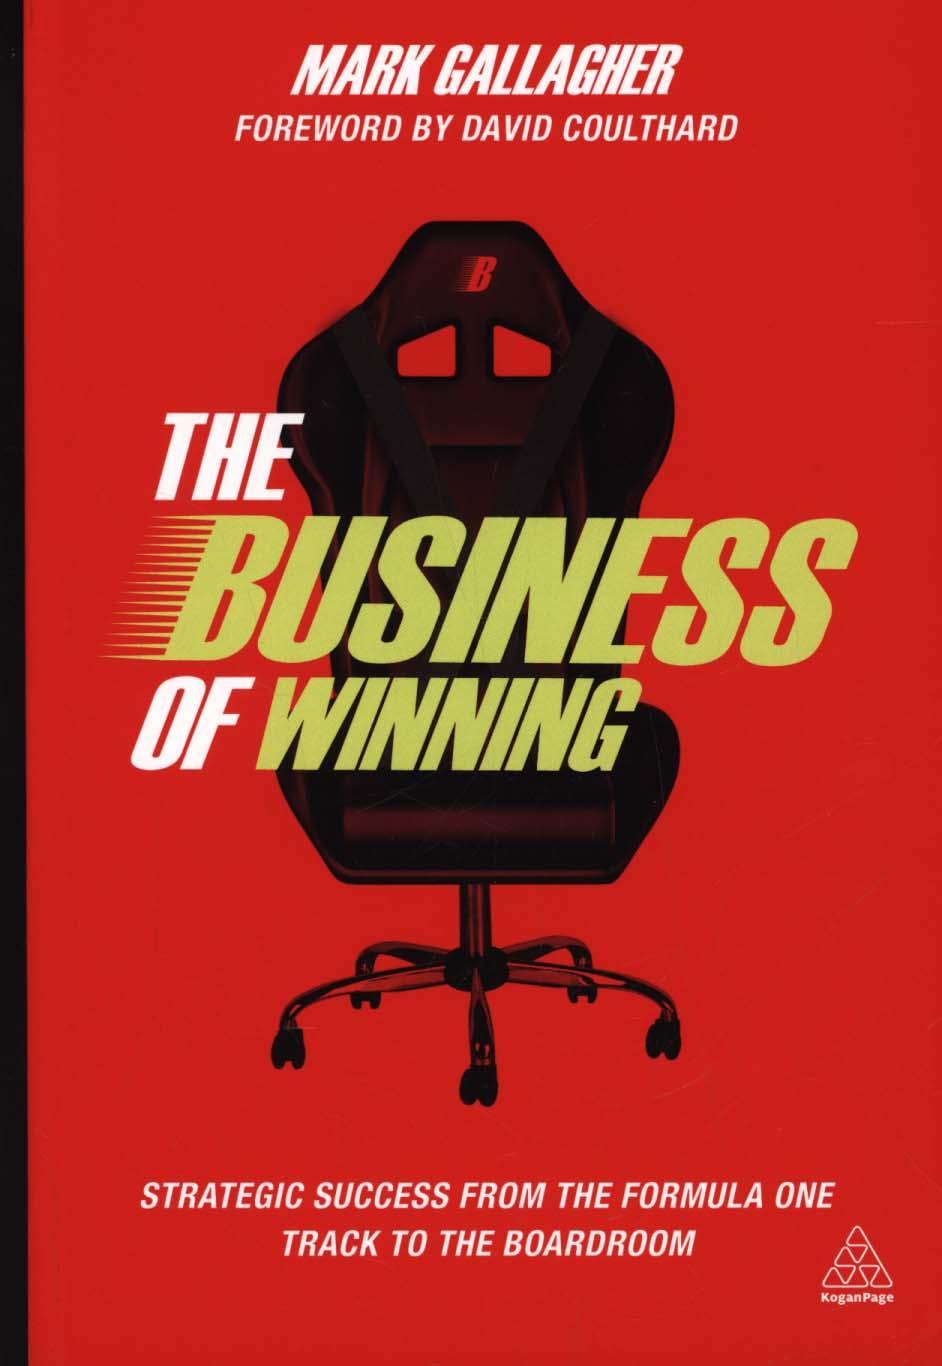 Business of Winning